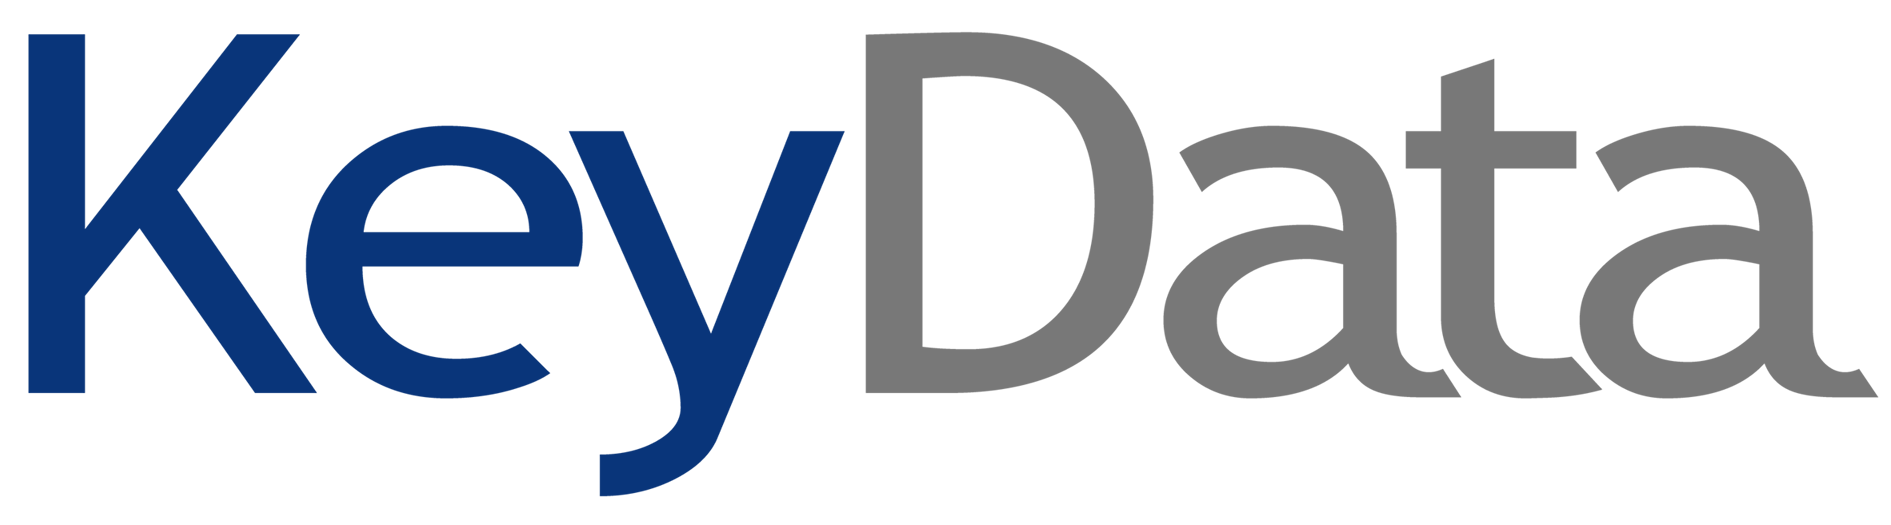 Keydata logo flat new